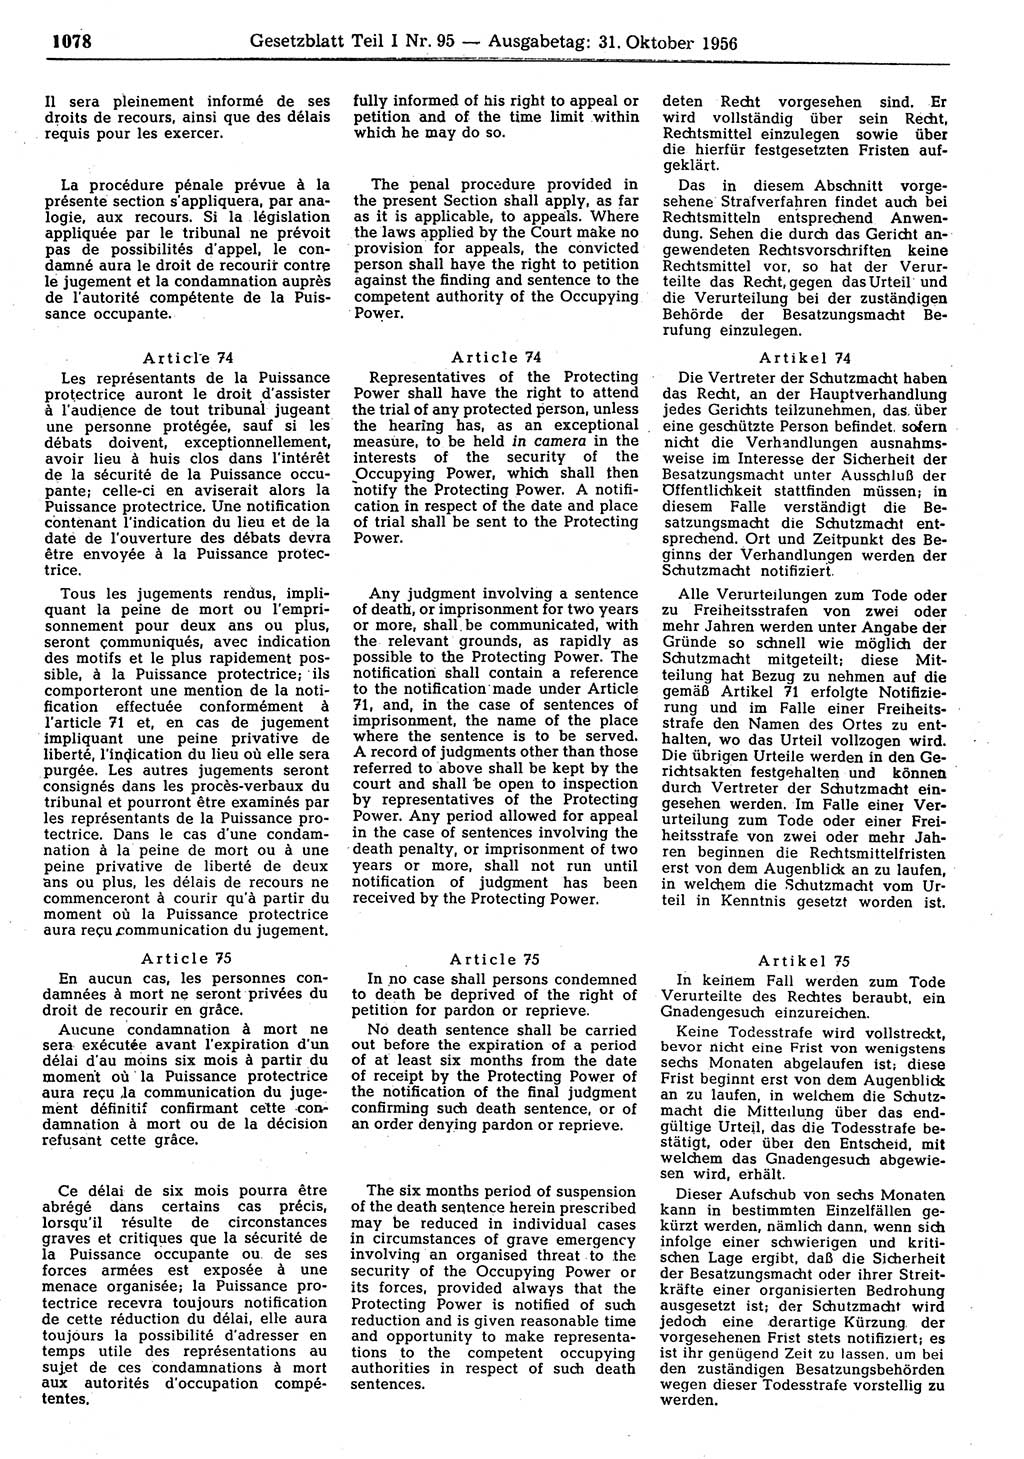 Gesetzblatt (GBl.) der Deutschen Demokratischen Republik (DDR) Teil Ⅰ 1956, Seite 1078 (GBl. DDR Ⅰ 1956, S. 1078)